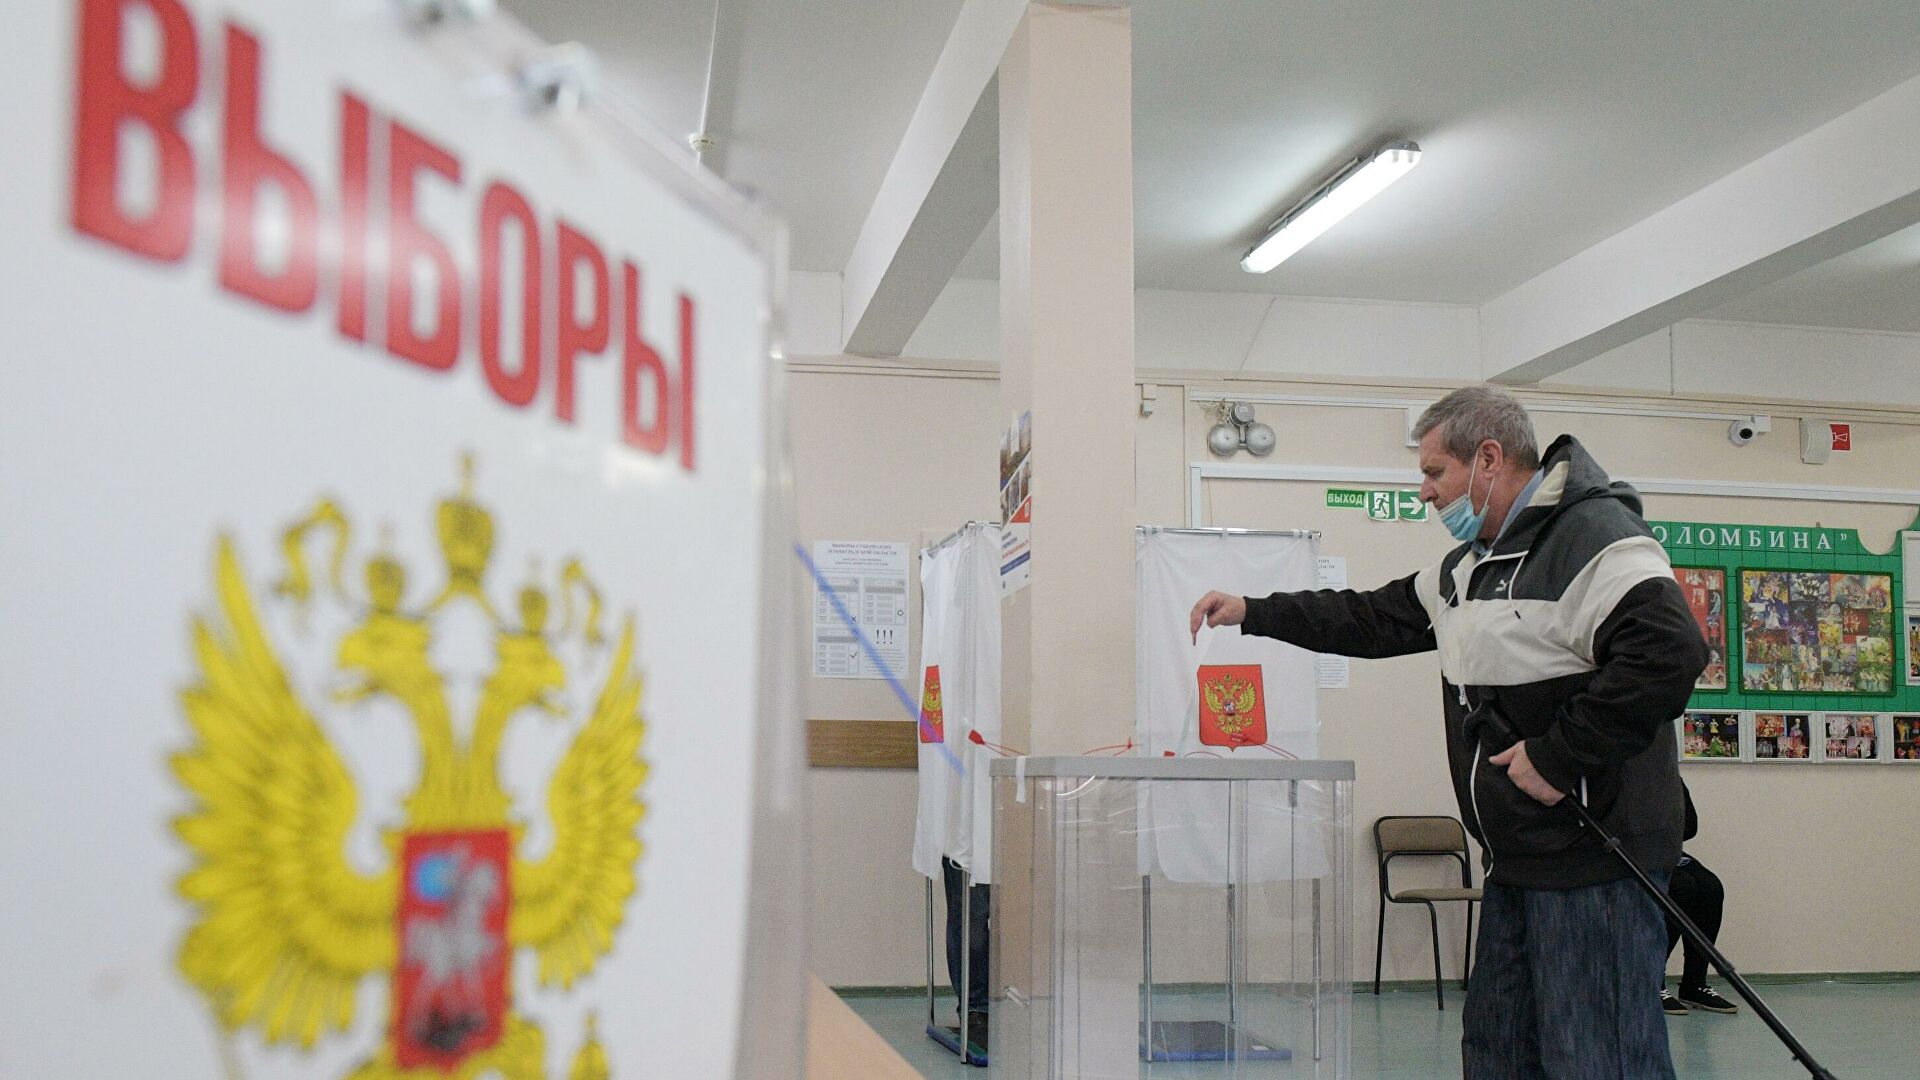 Rusya’da Duma seçimeleri 3 gün sürecek